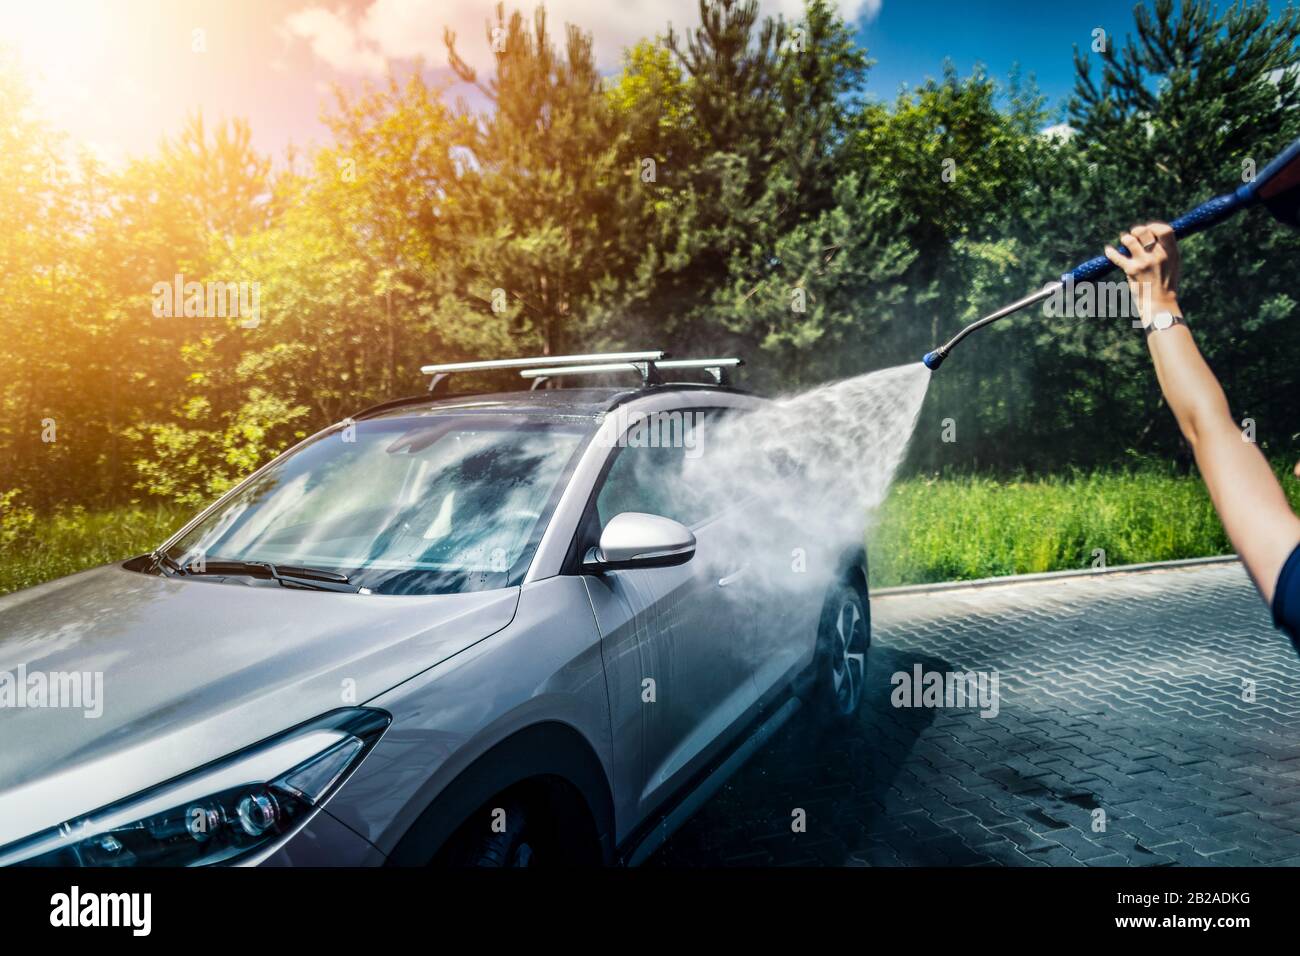 Lavado de autos manual con agua presurizada en lavado de coche fuera. Foto de stock